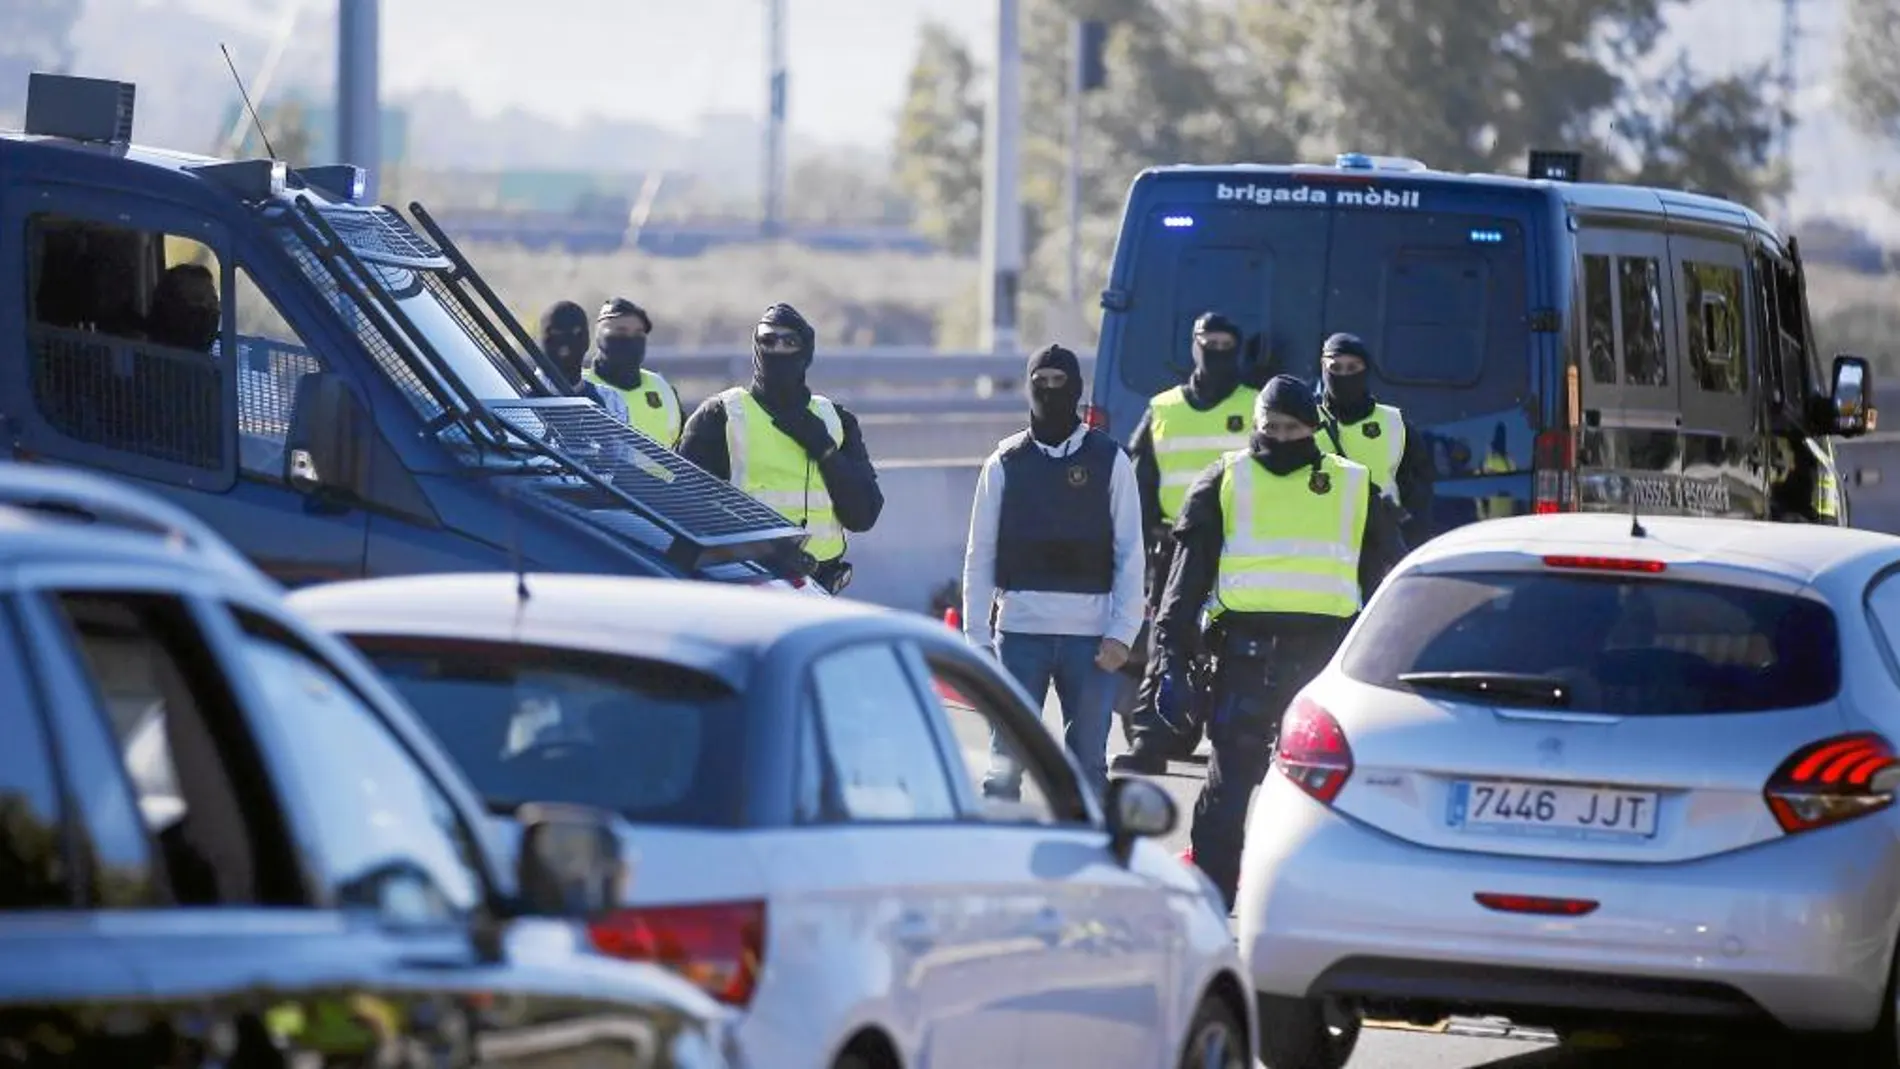 Los Mossos han incrementado sus controles de tráfico estos días, debido a los atentados